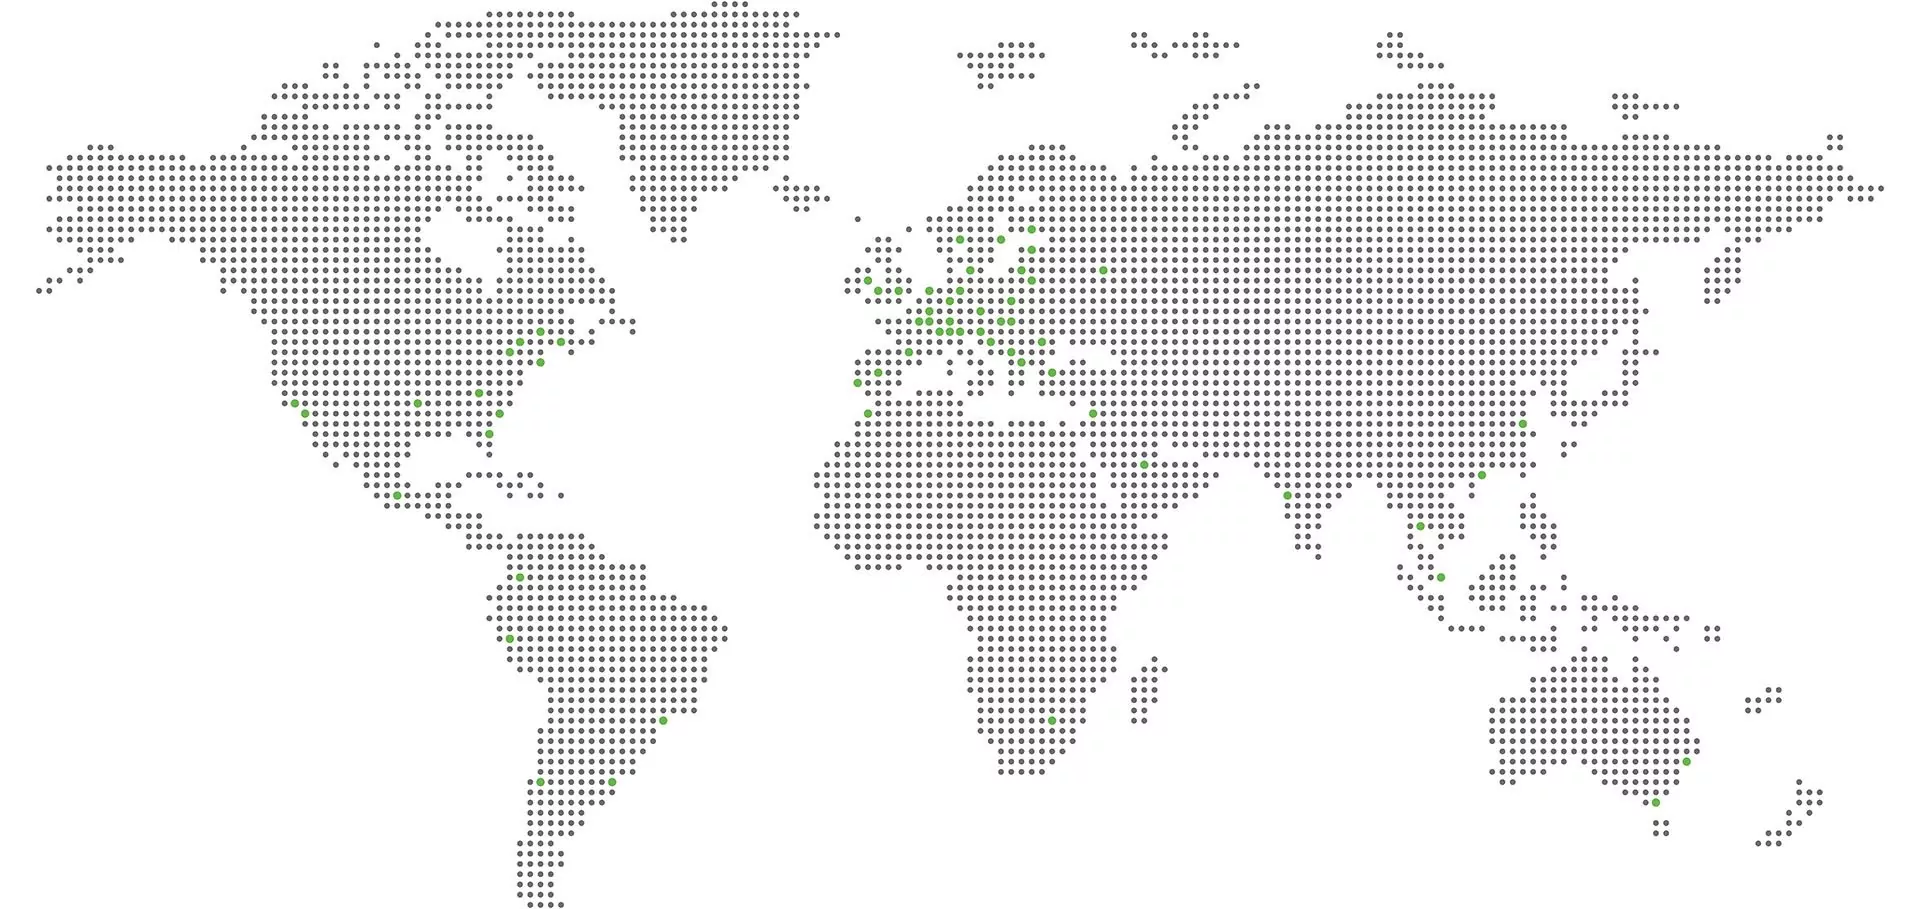 Mapa mundi estilizado